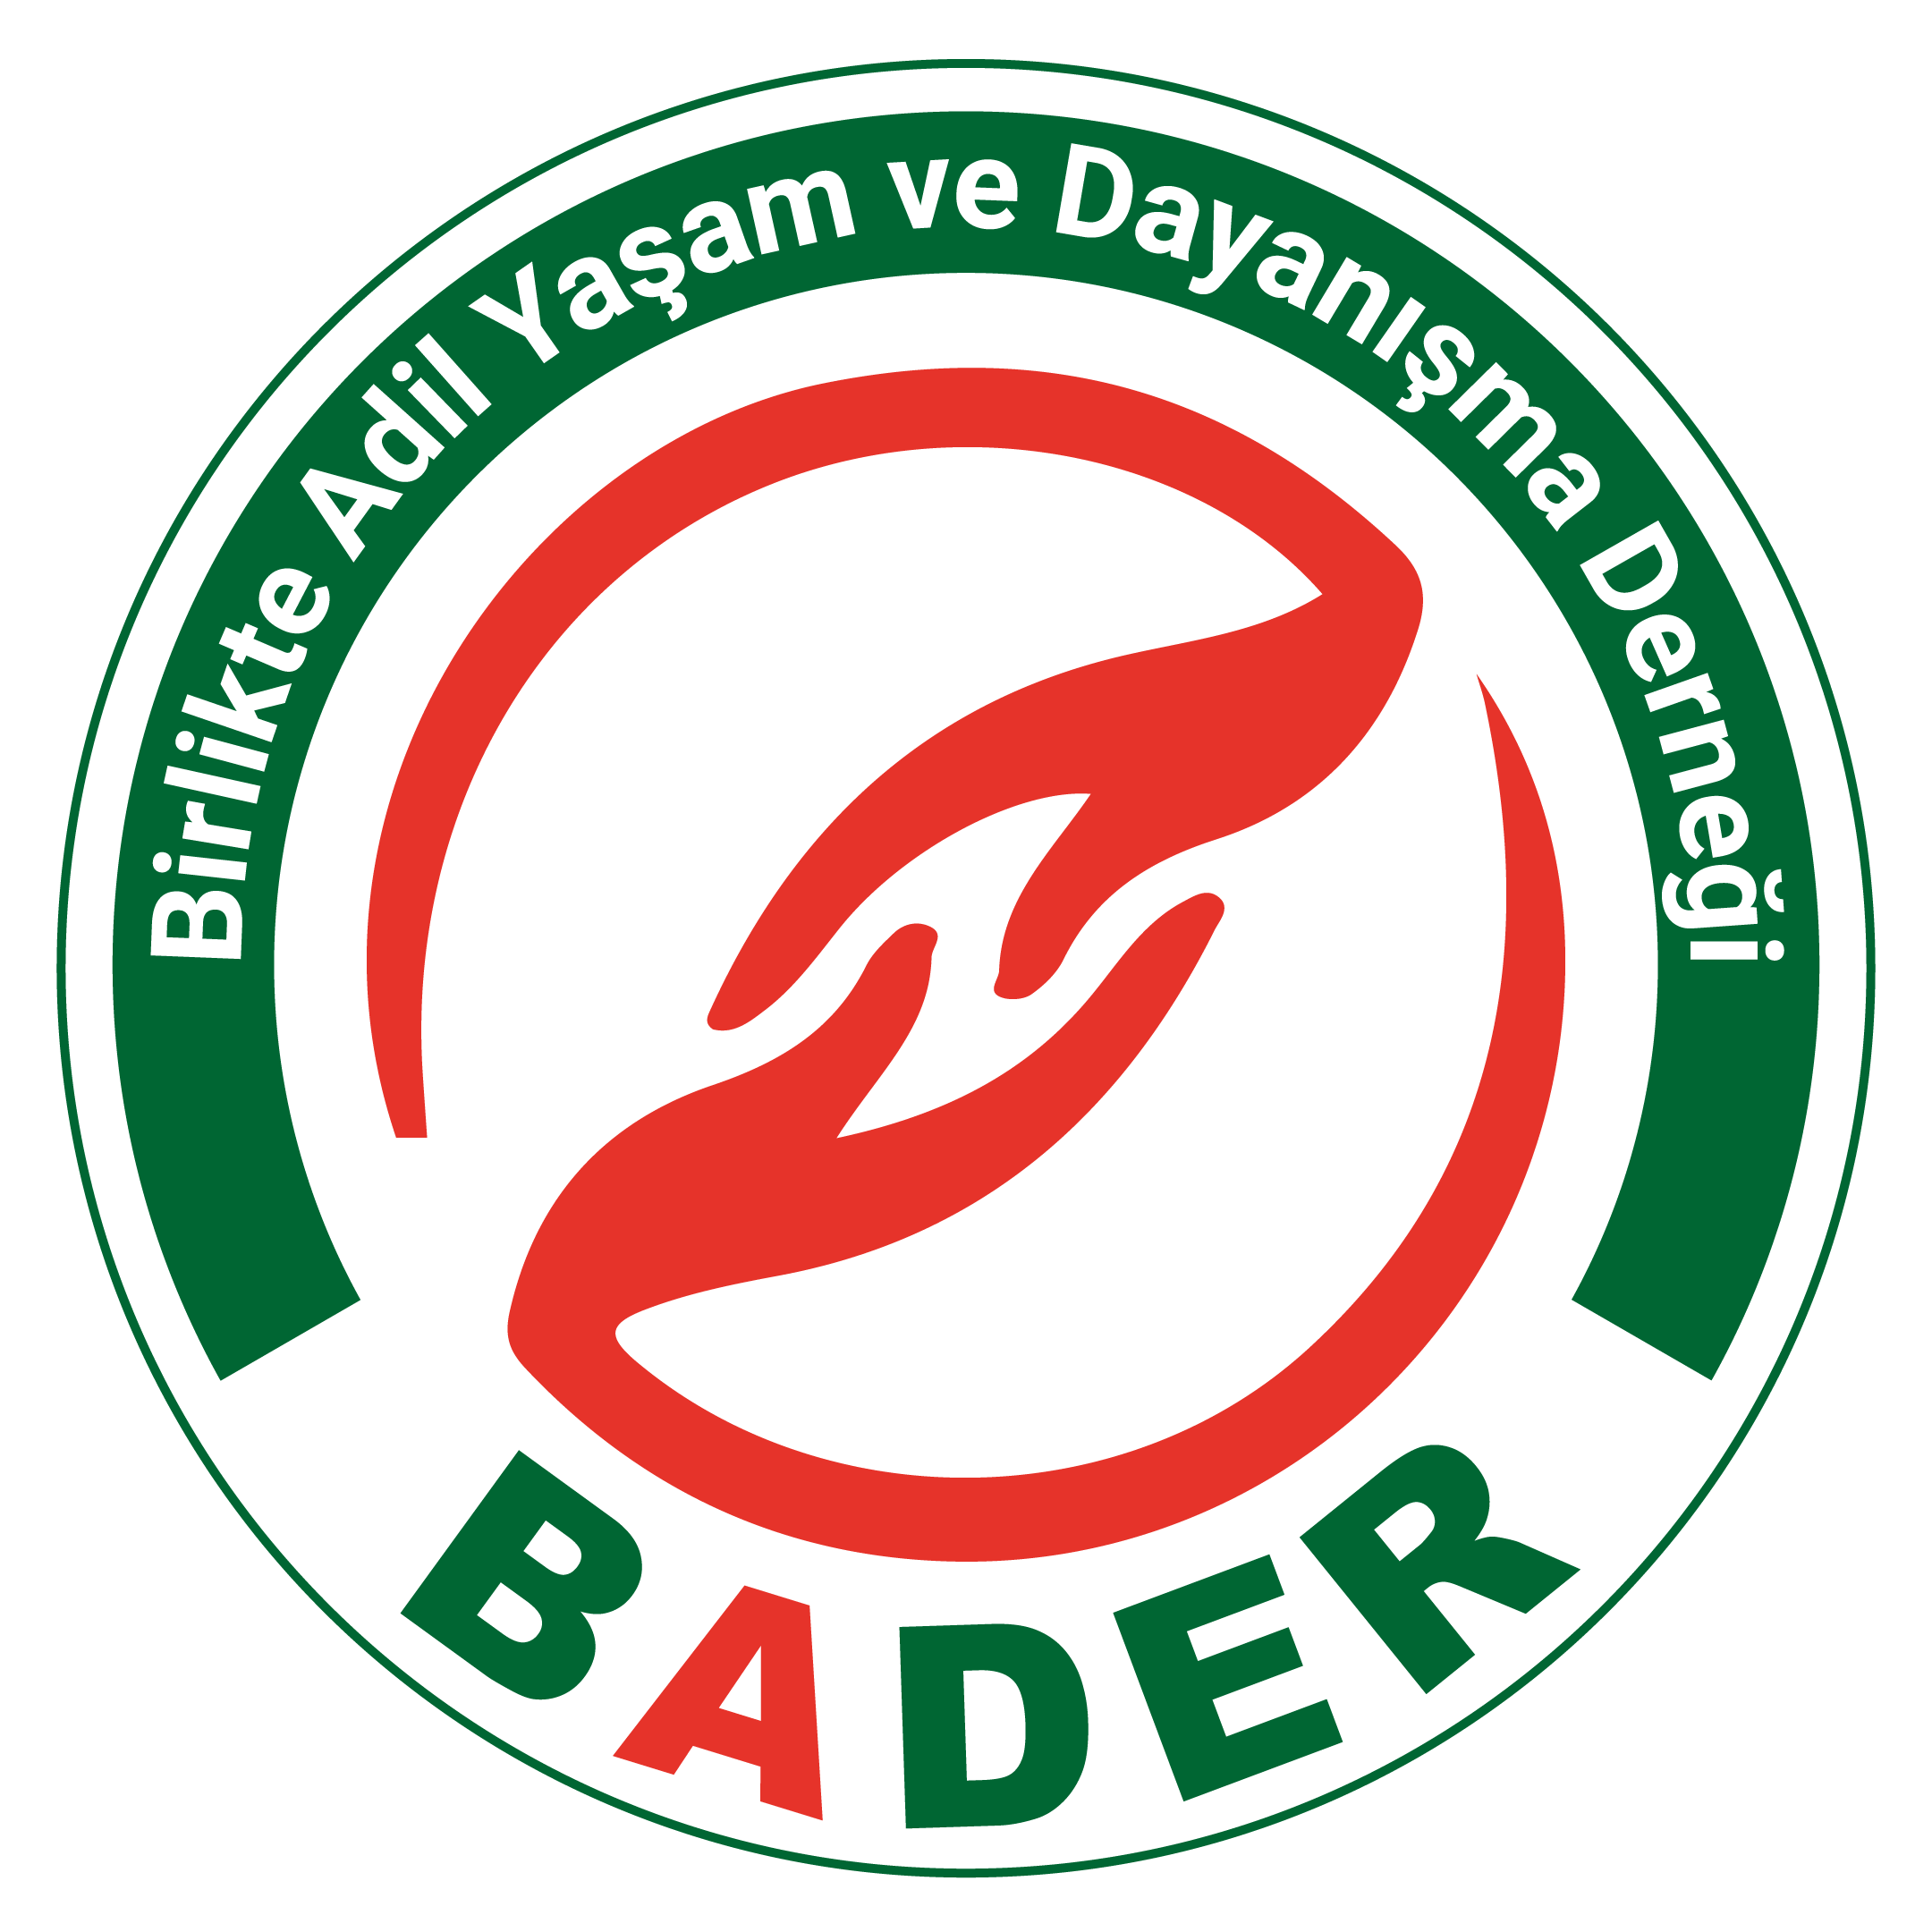 Bader